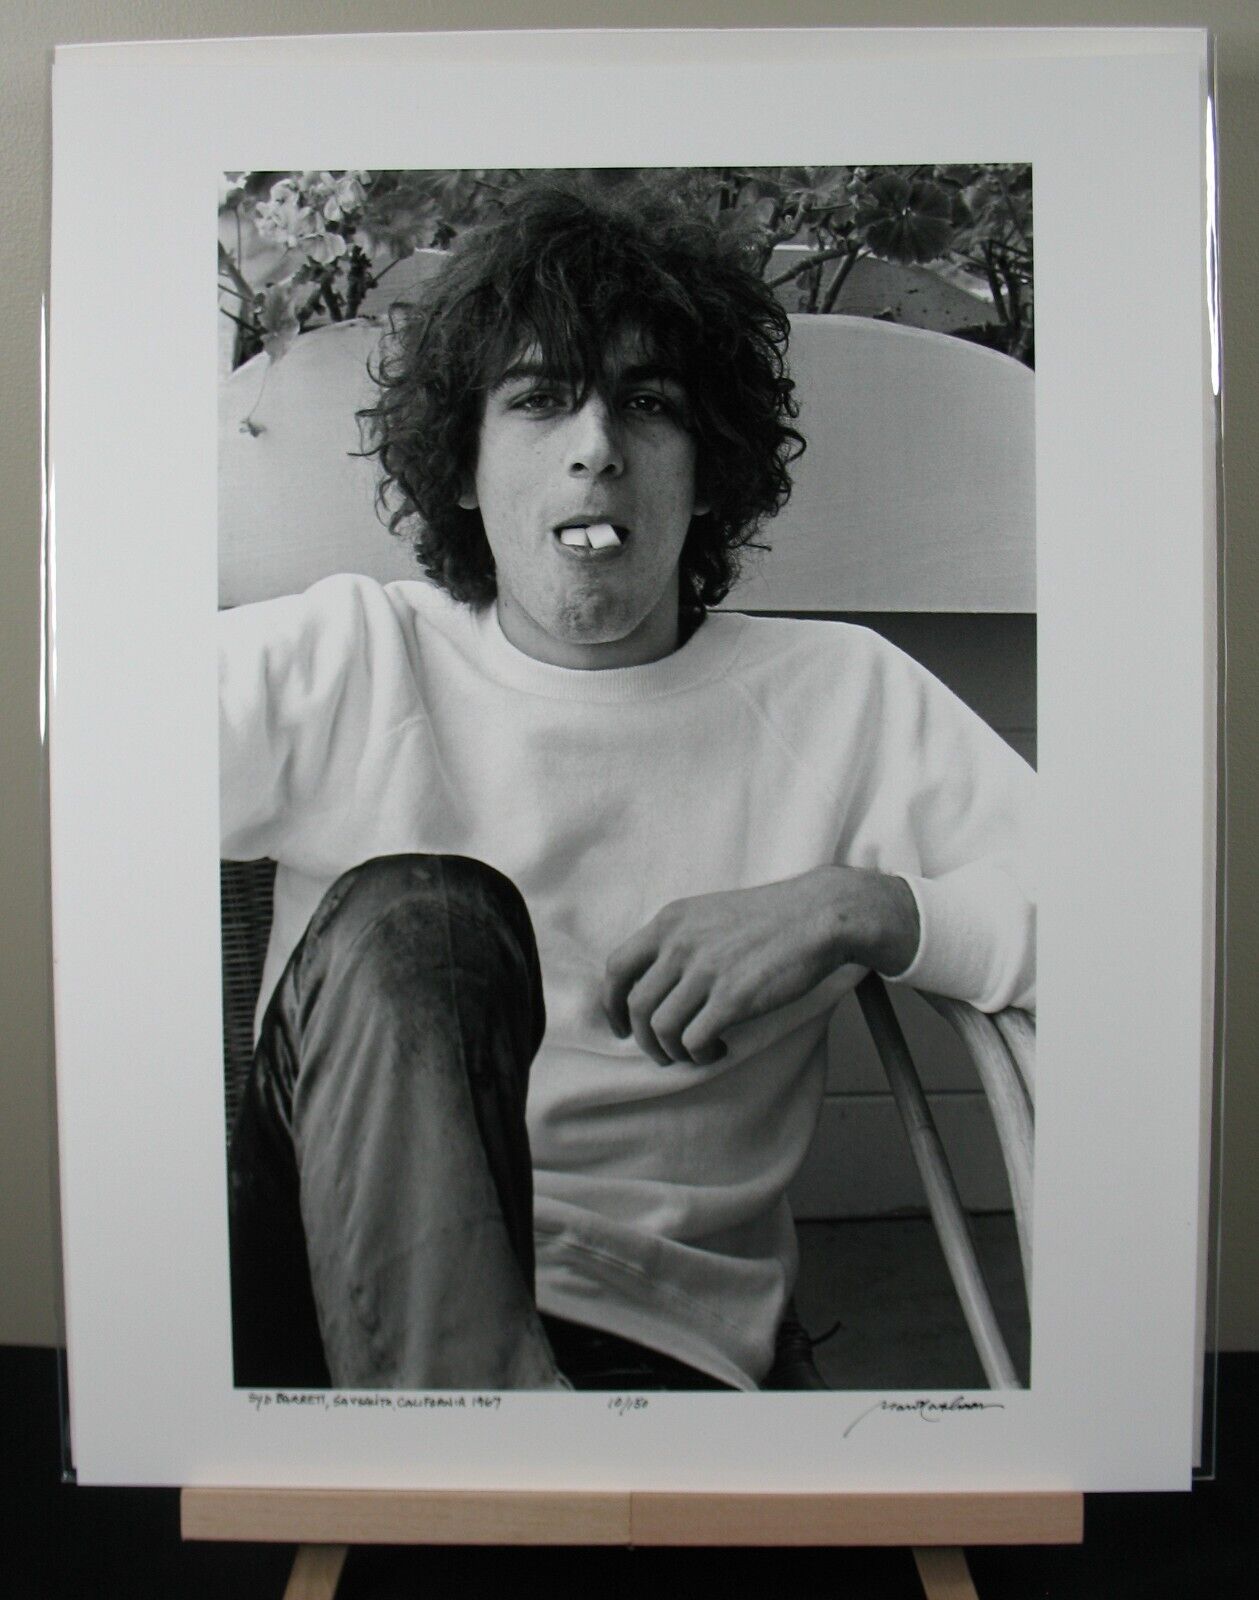 Syd Barrett, Pink Floyd 1967 16x20 BW Photo Signed Baron Wolman LE #10 of 150